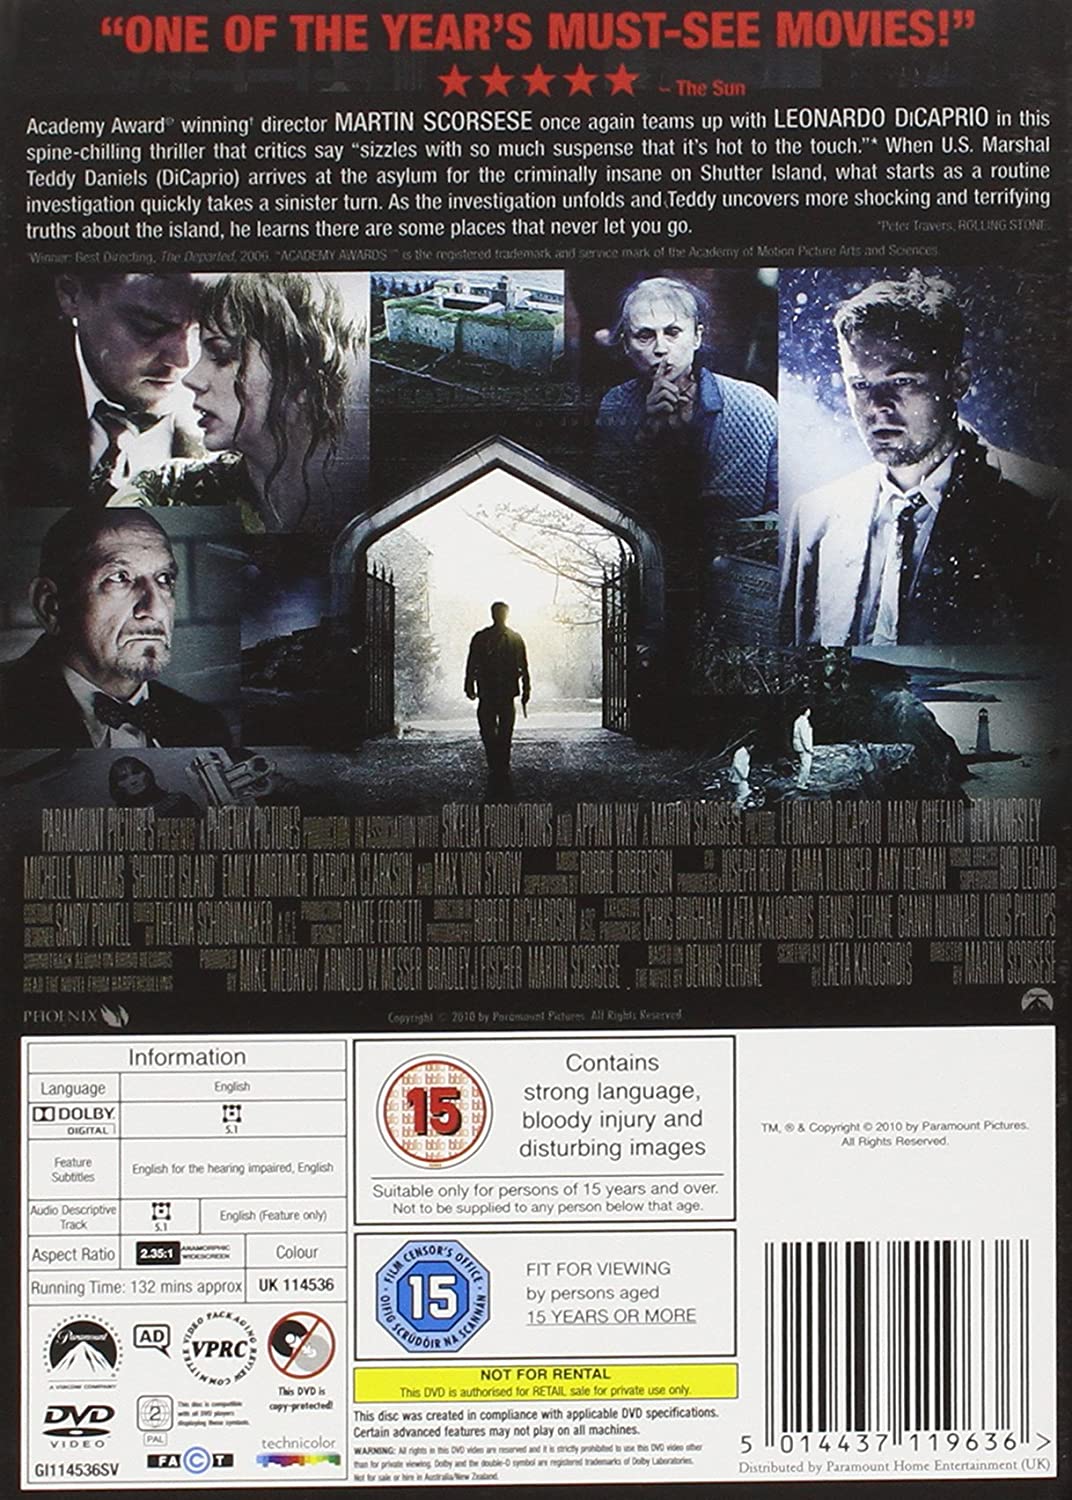 Shutter Island (2010) [DVD]